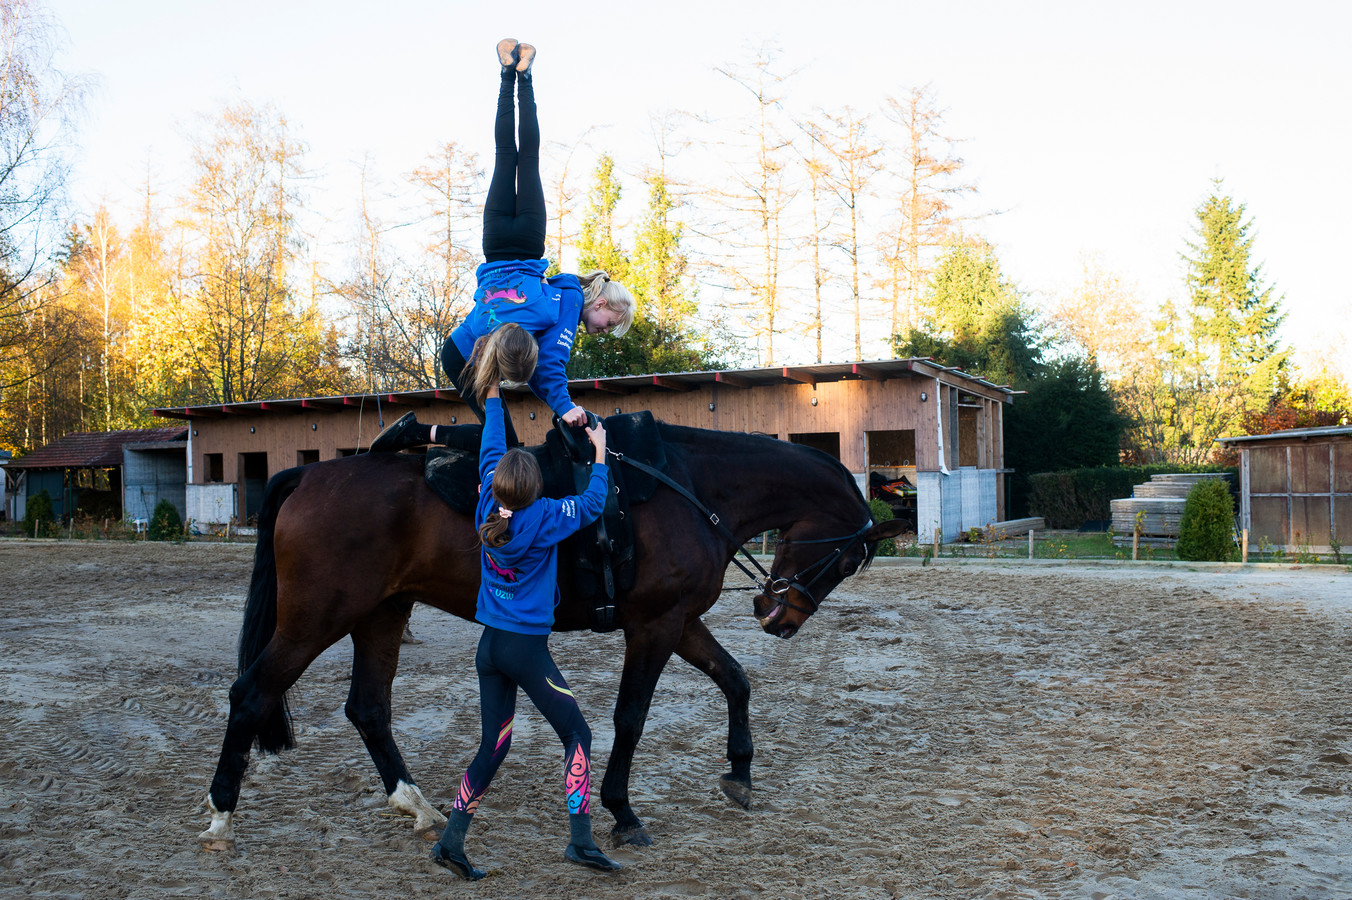 vertrouwen woensdag boerderij Turn eens op een rijdend paard: “Vooral evenwicht en kracht zijn bij  'voltige' belangrijk” | Foto | hln.be